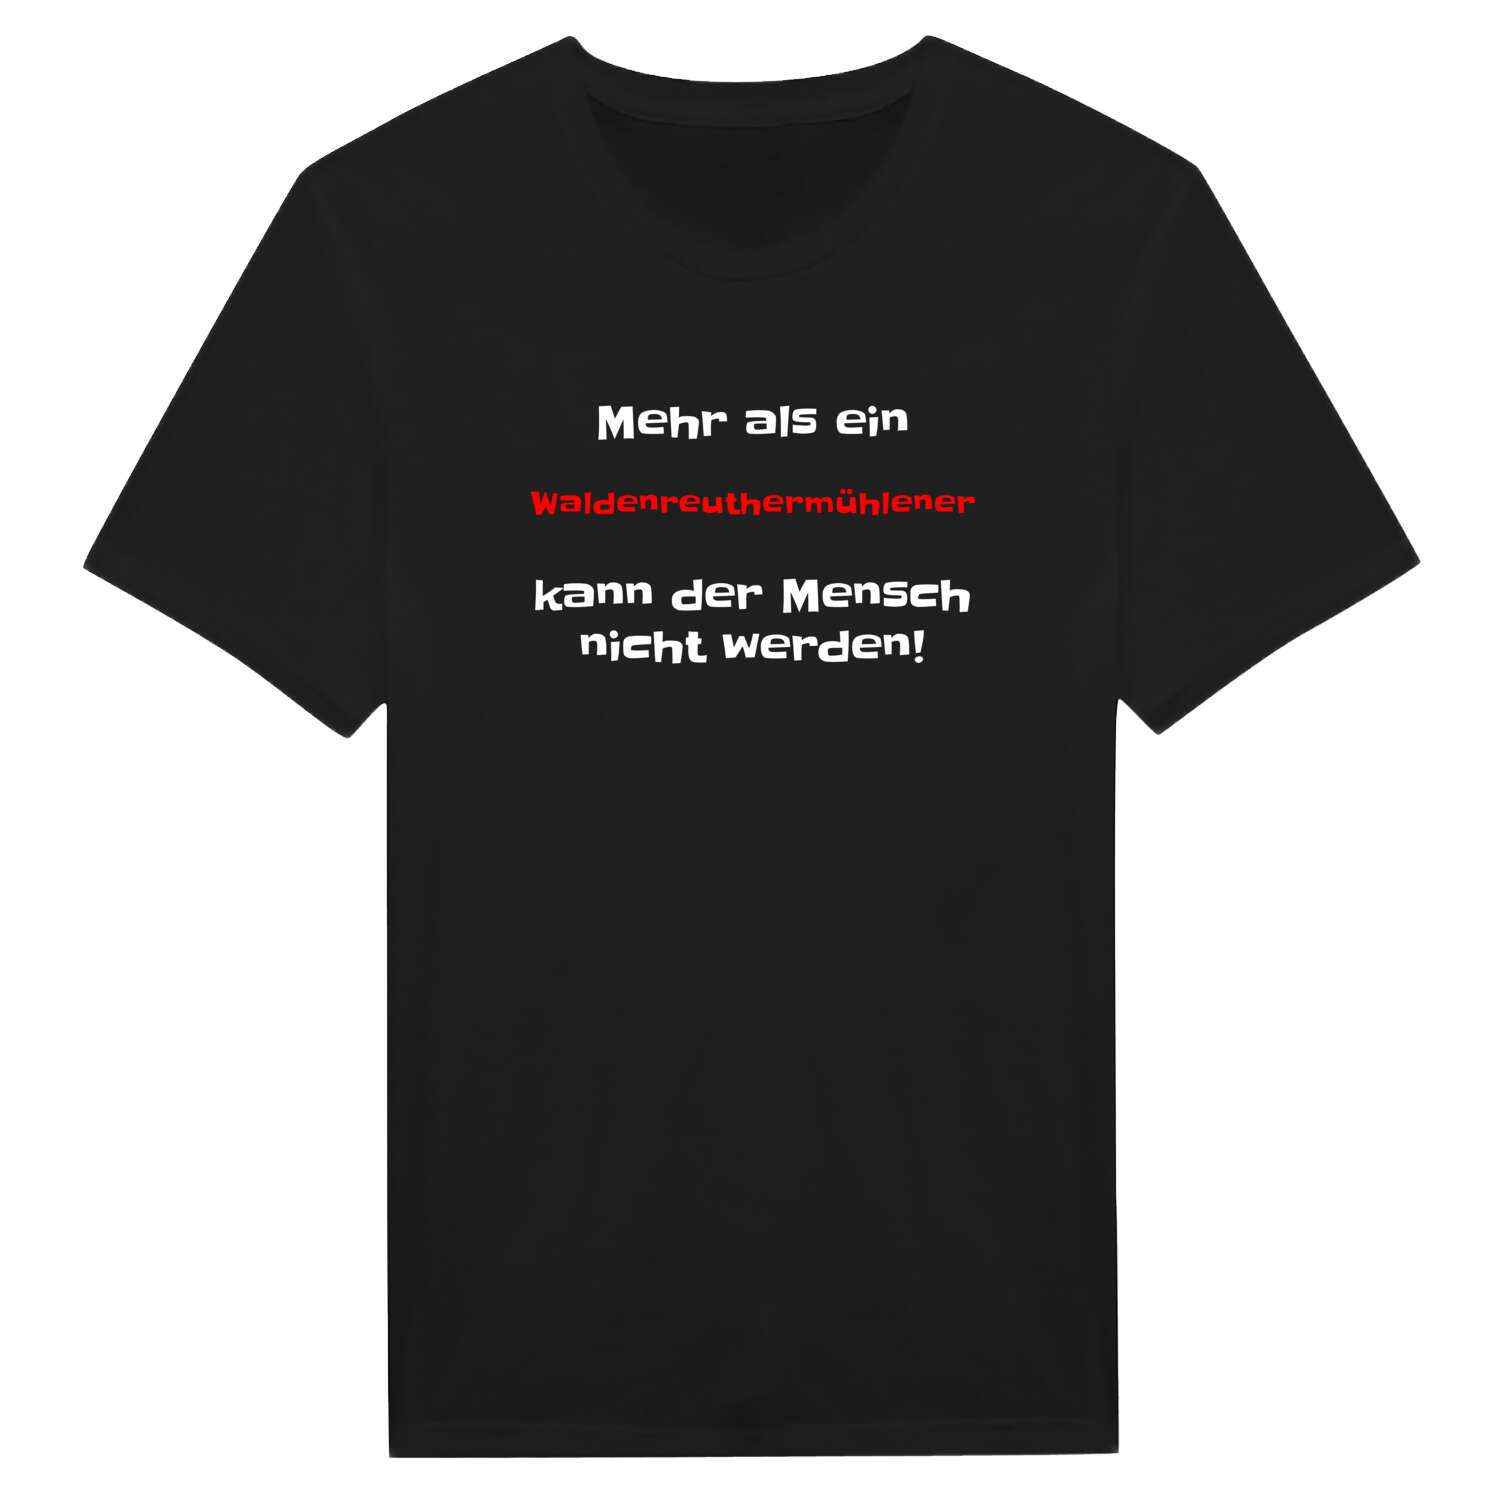 Waldenreuthermühle T-Shirt »Mehr als ein«